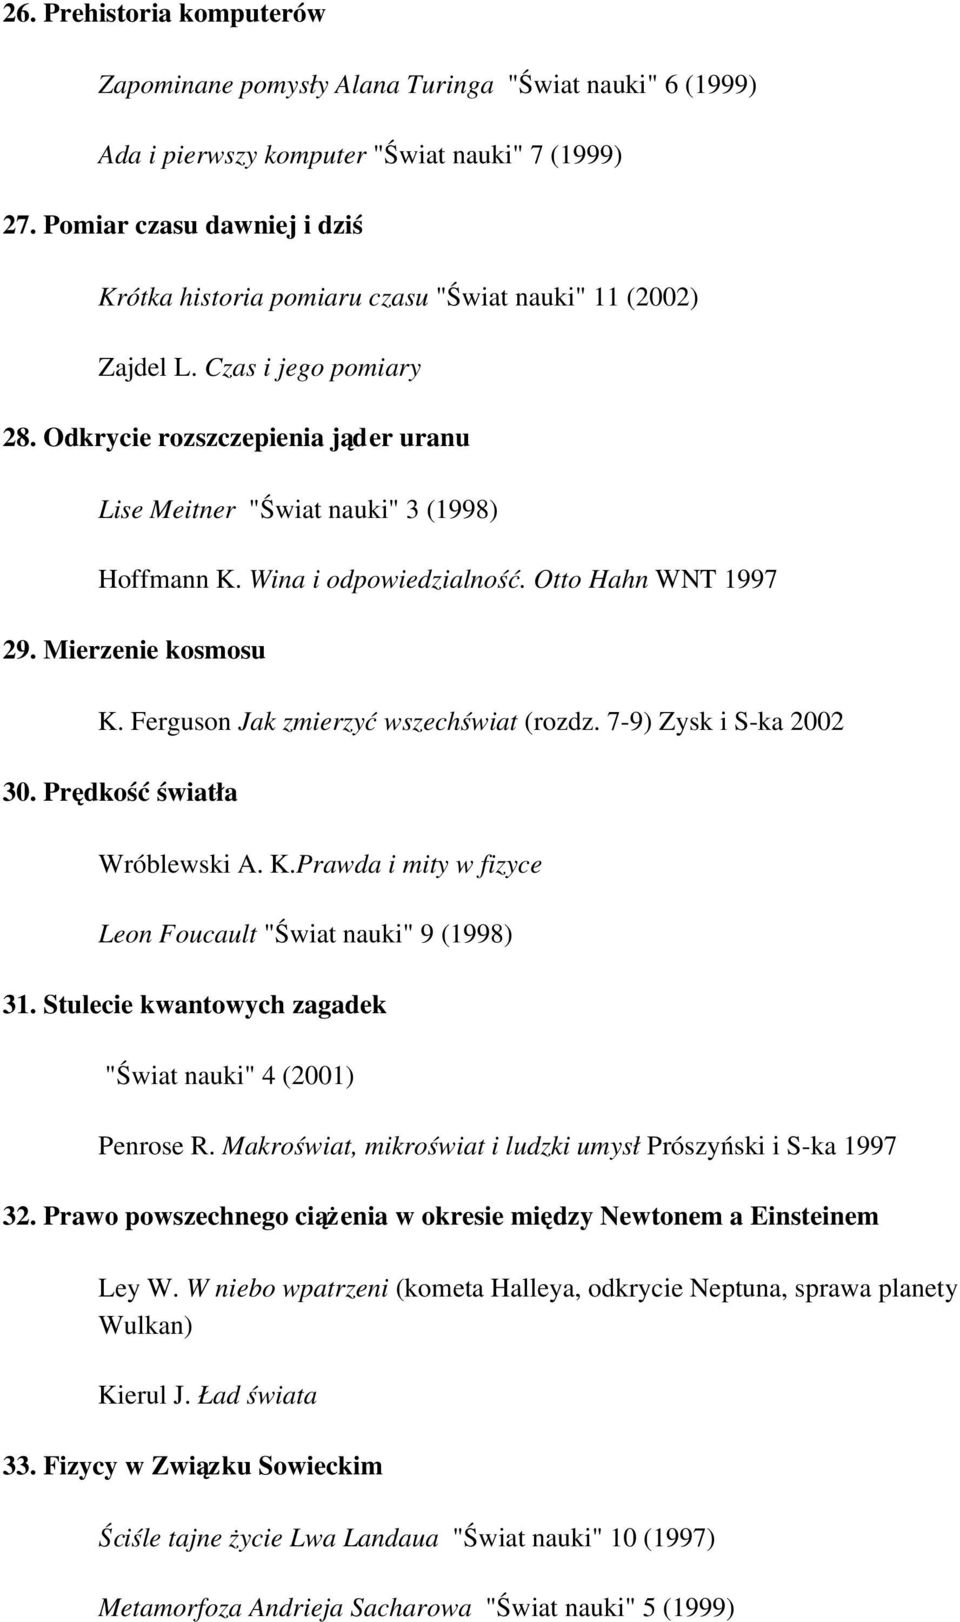 Wina i odpowiedzialność. Otto Hahn WNT 1997 29. Mierzenie kosmosu K. Ferguson Jak zmierzyć wszechświat (rozdz. 7 9) Zysk i S ka 2002 30. Prędkość światła Wróblewski A. K.Prawda i mity w fizyce Leon Foucault "Świat nauki" 9 (1998) 31.